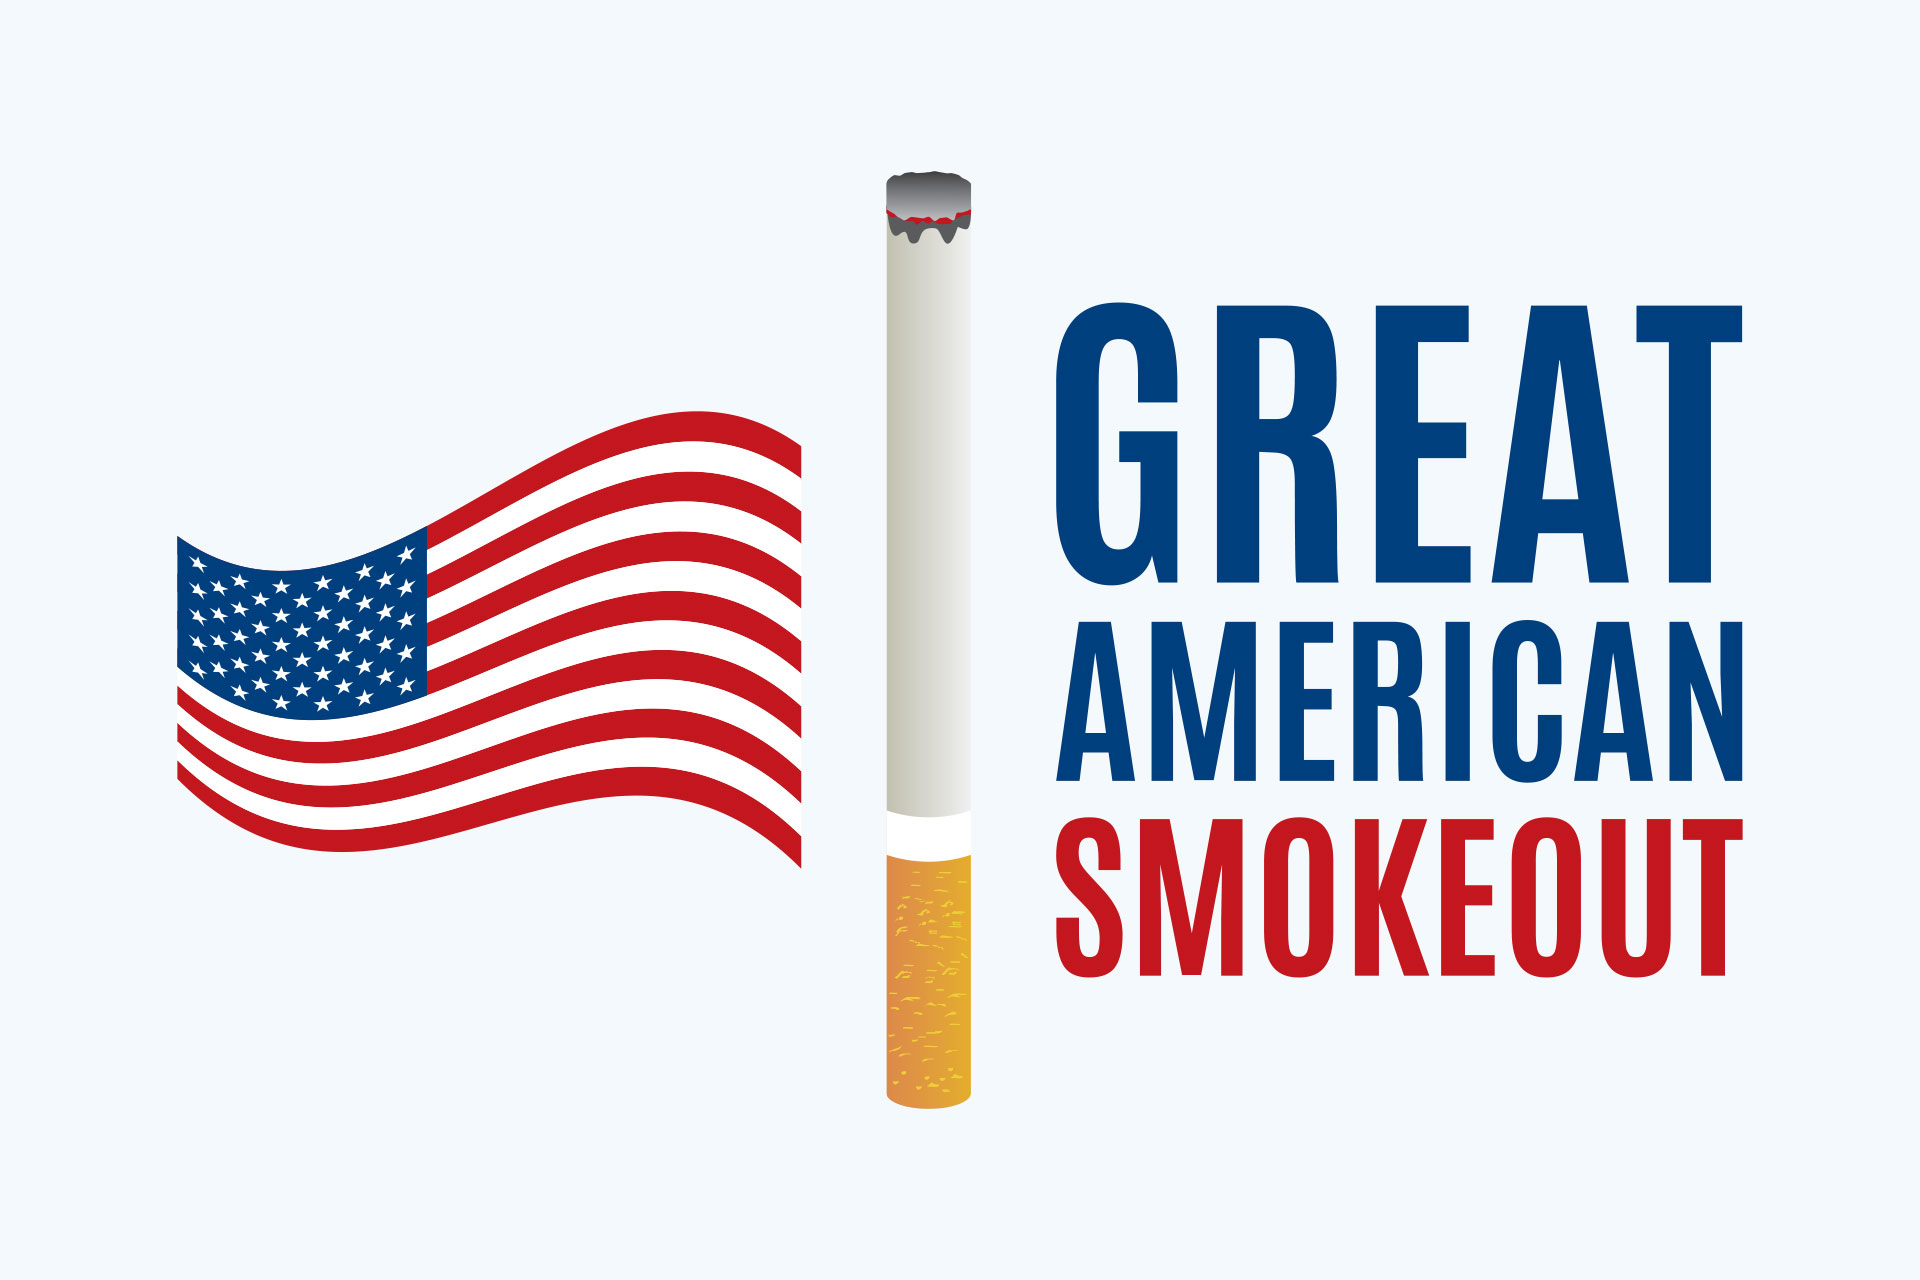 Great american smokeout